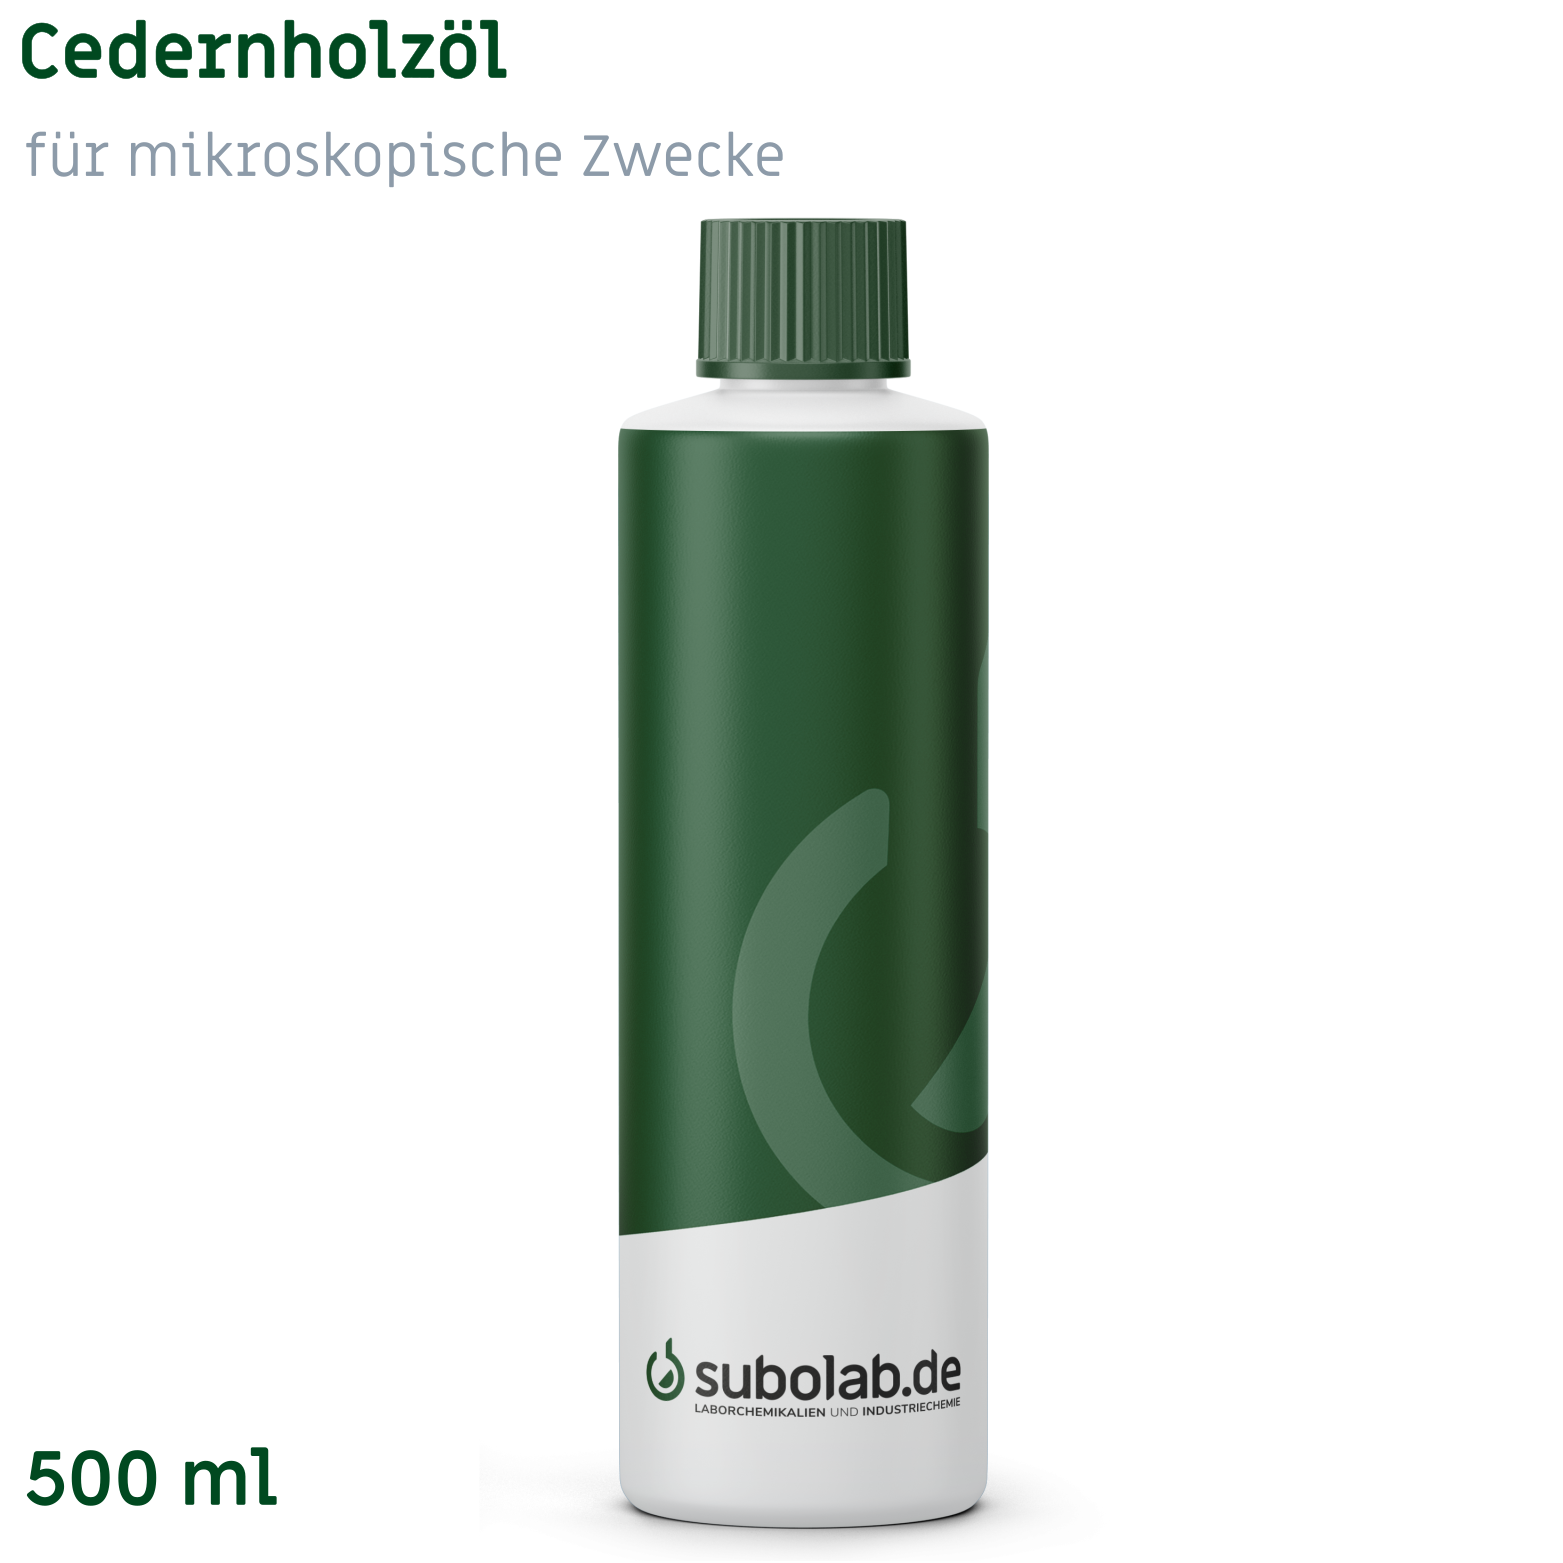 Bild von Cedernholzöl für mikroskopische Zwecke (500 ml)